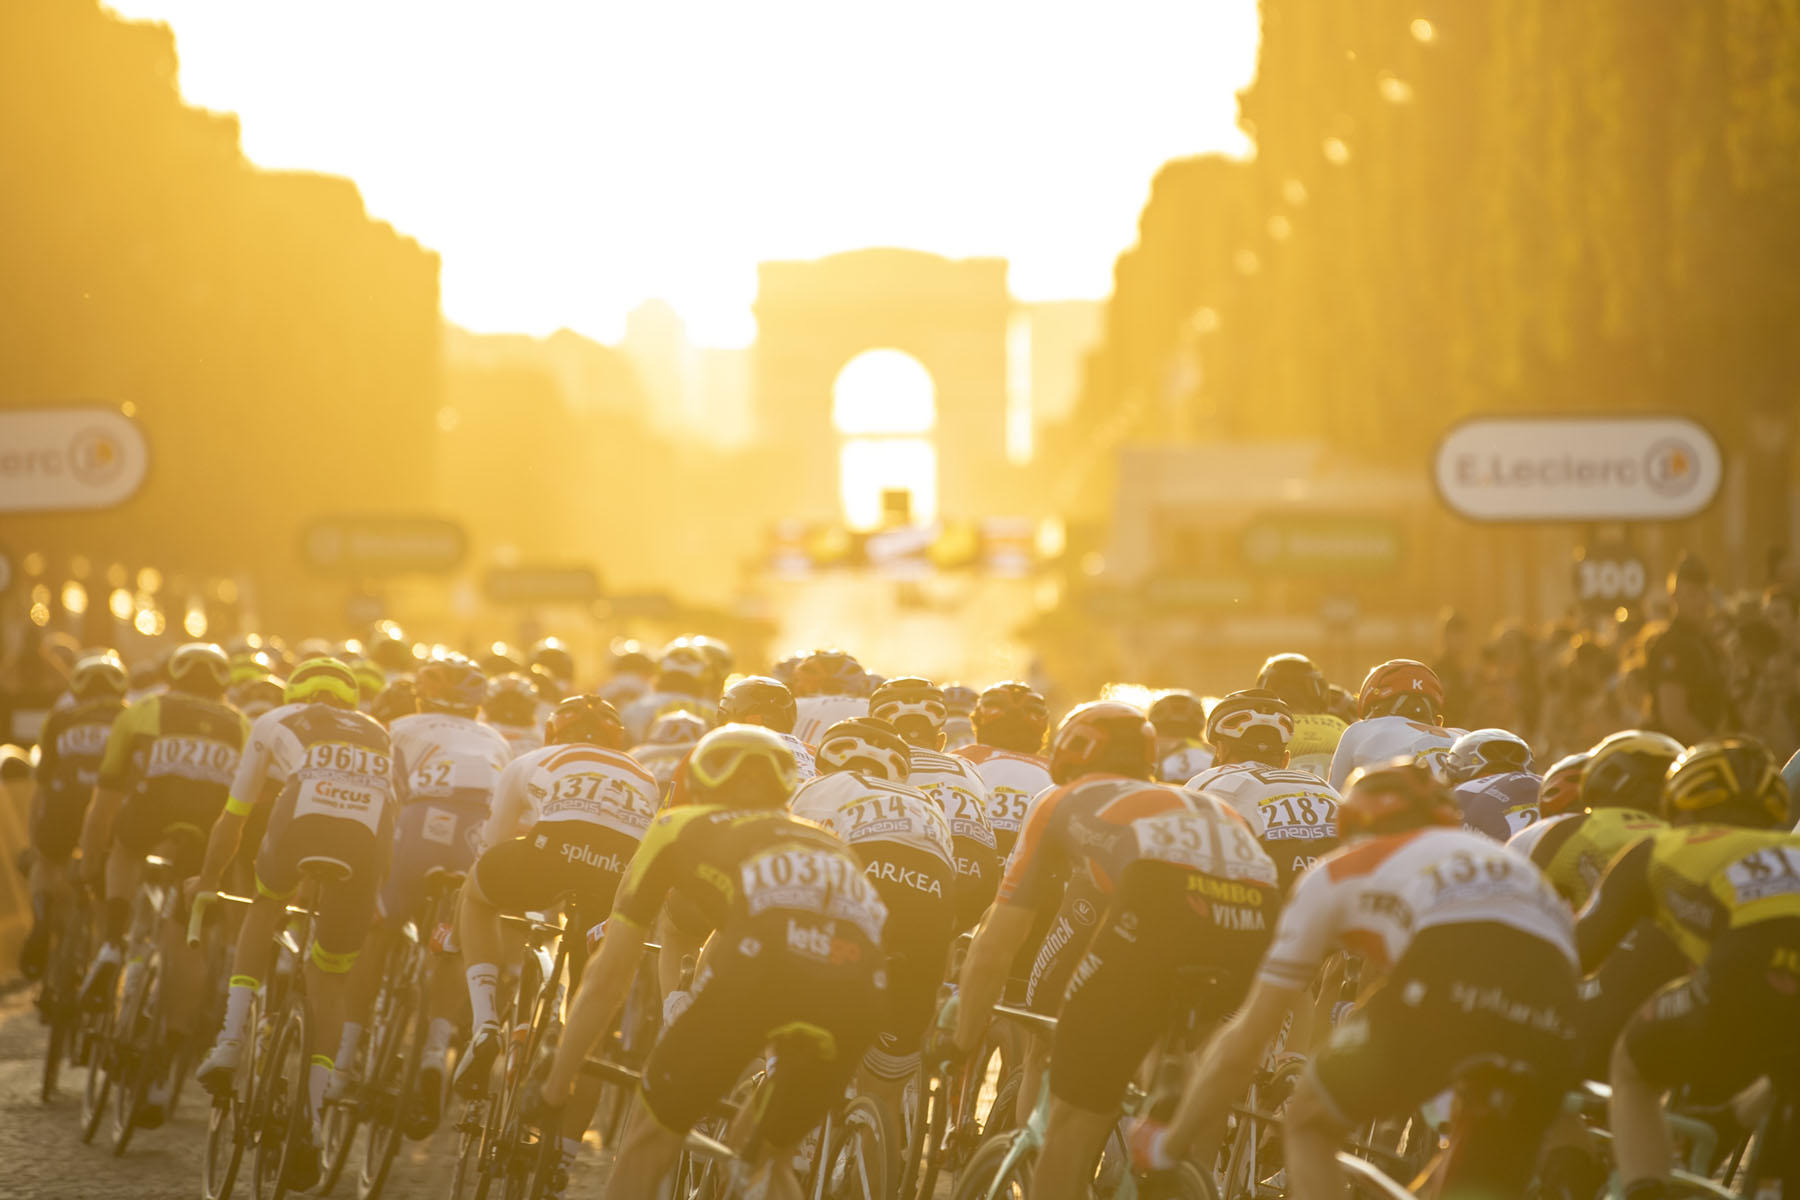 Tour de France 2019 - Stage Twenty One - The peloton rides towards the Arc de Triomphe